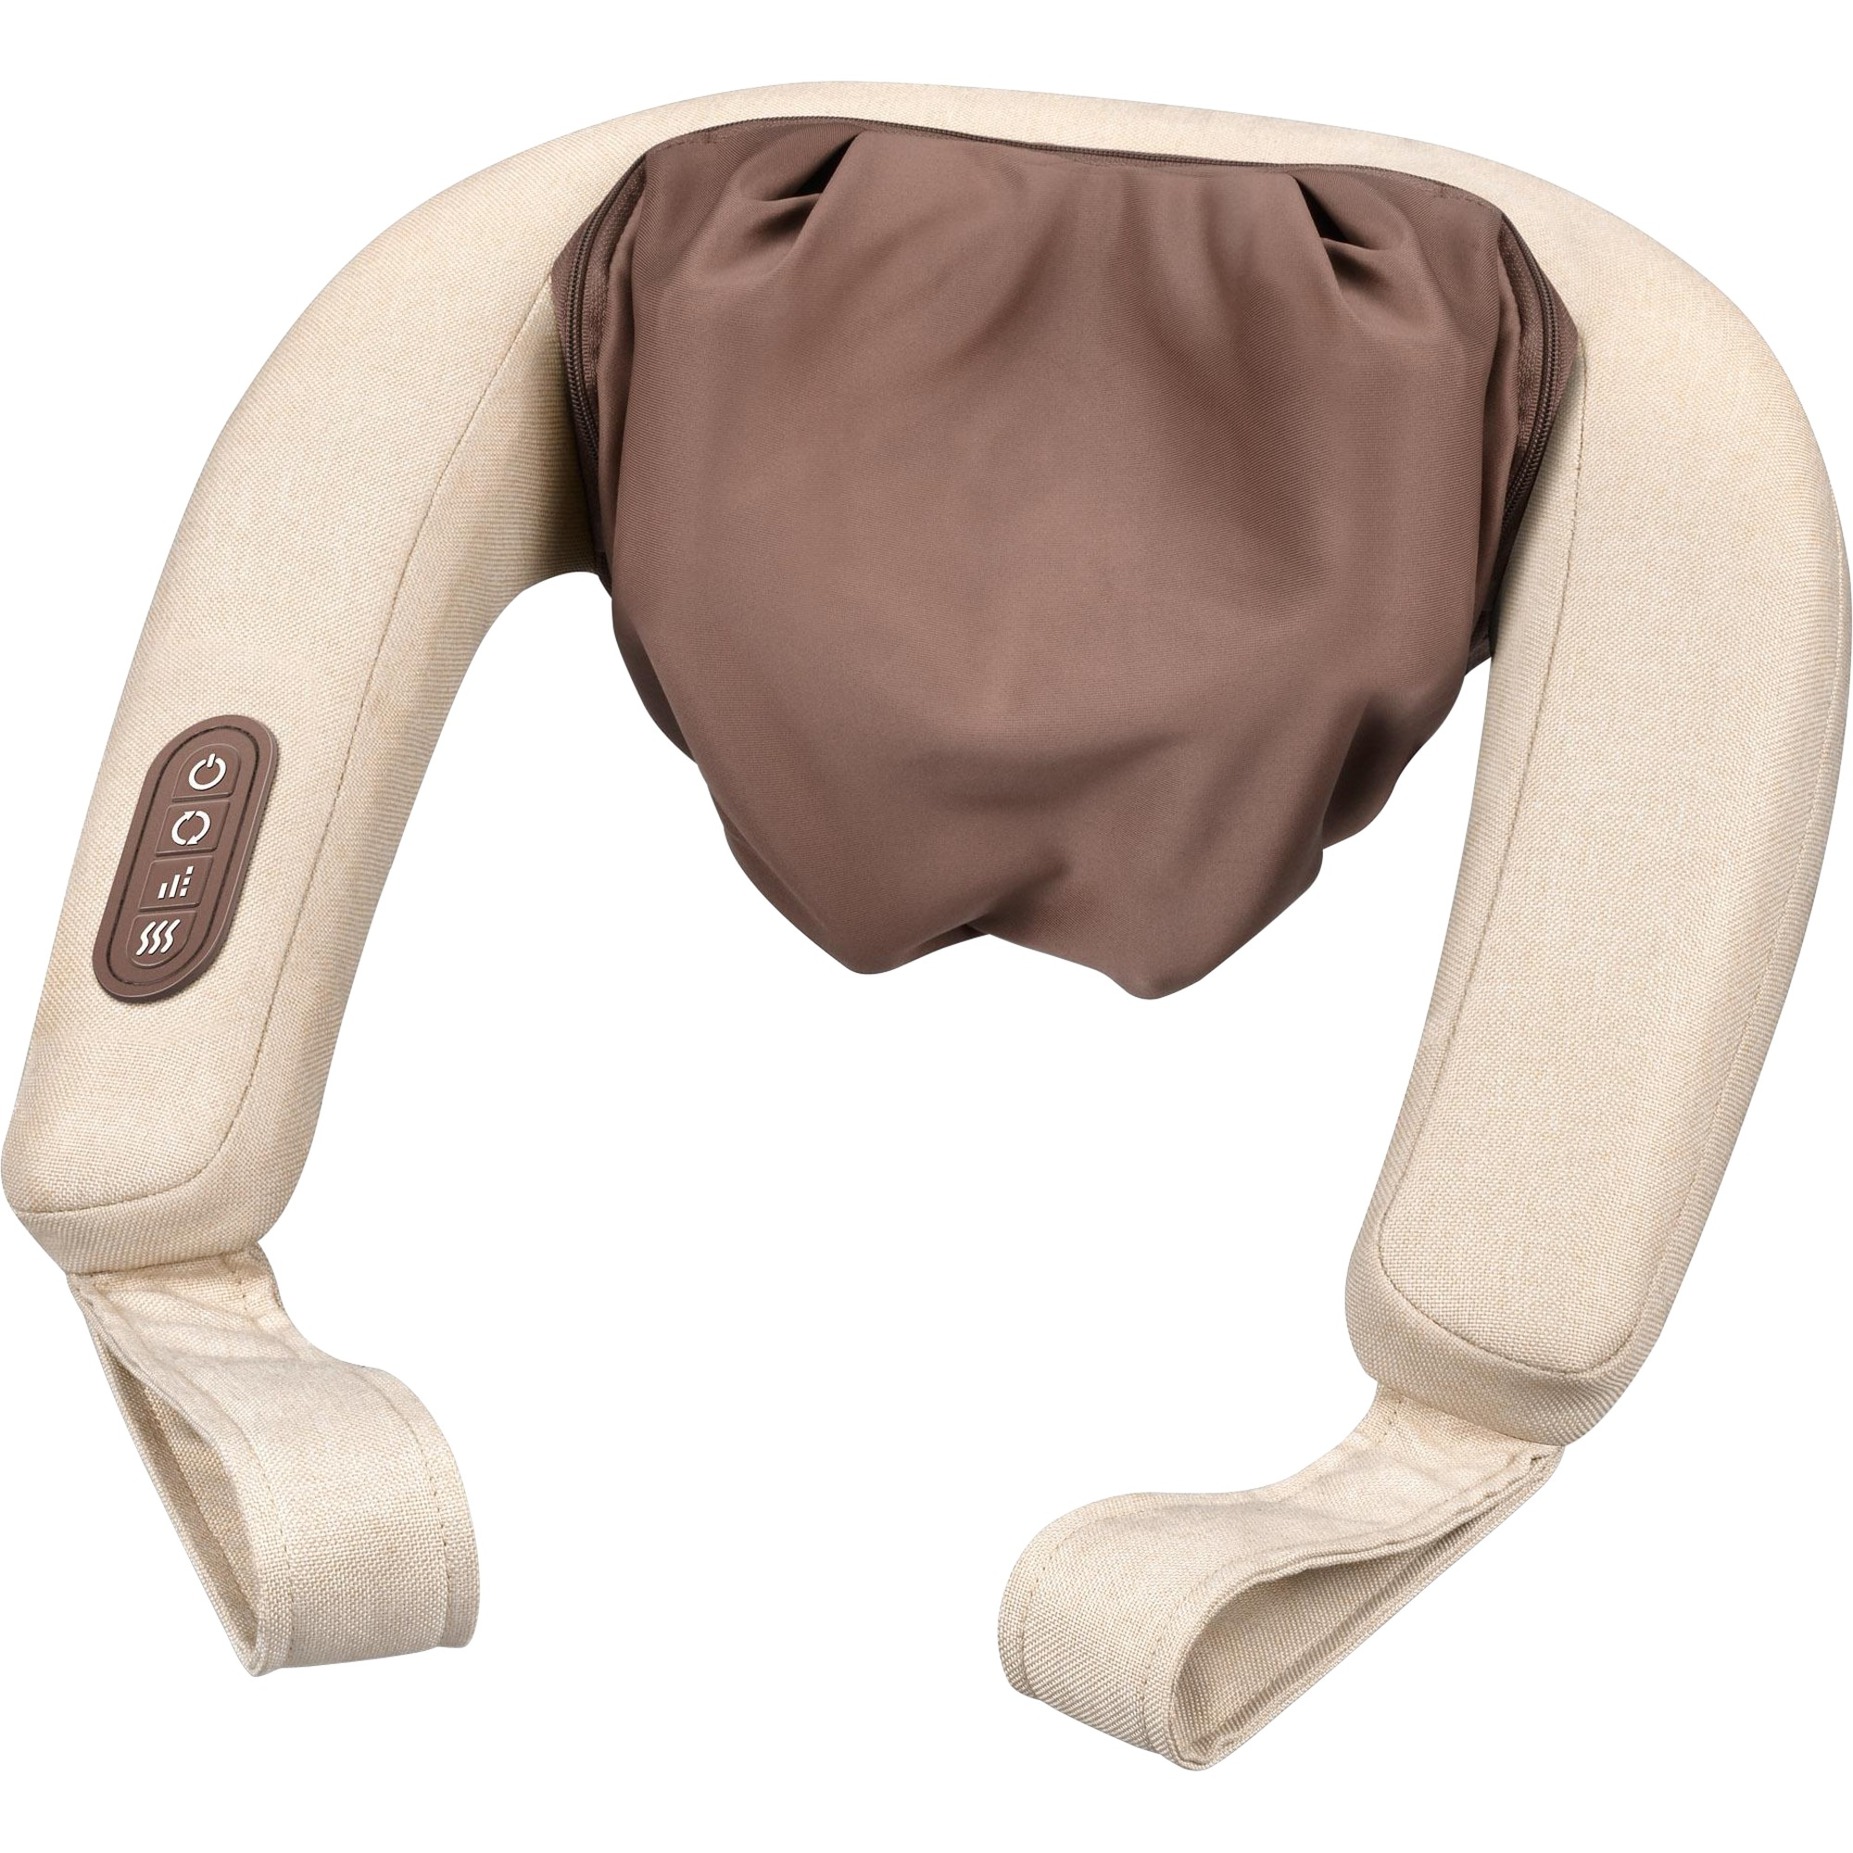 Image of Alternate - 4D Nackenmassagegerät MG 153 online einkaufen bei Alternate